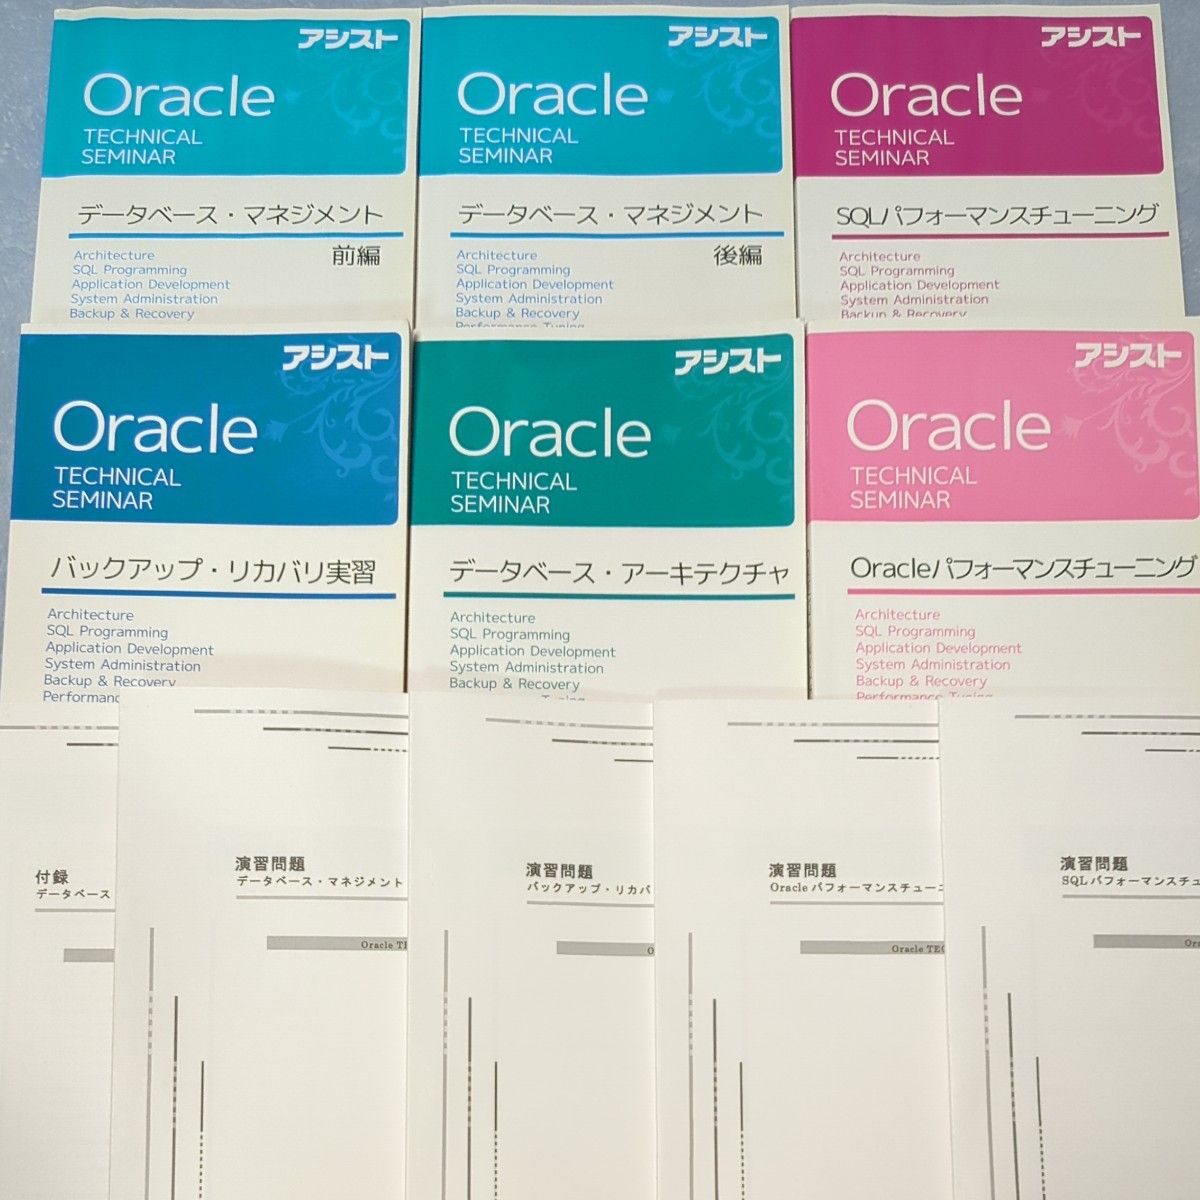 アシスト Oracle 研修 テキスト Oracle database オラクル SQL データベース 教材